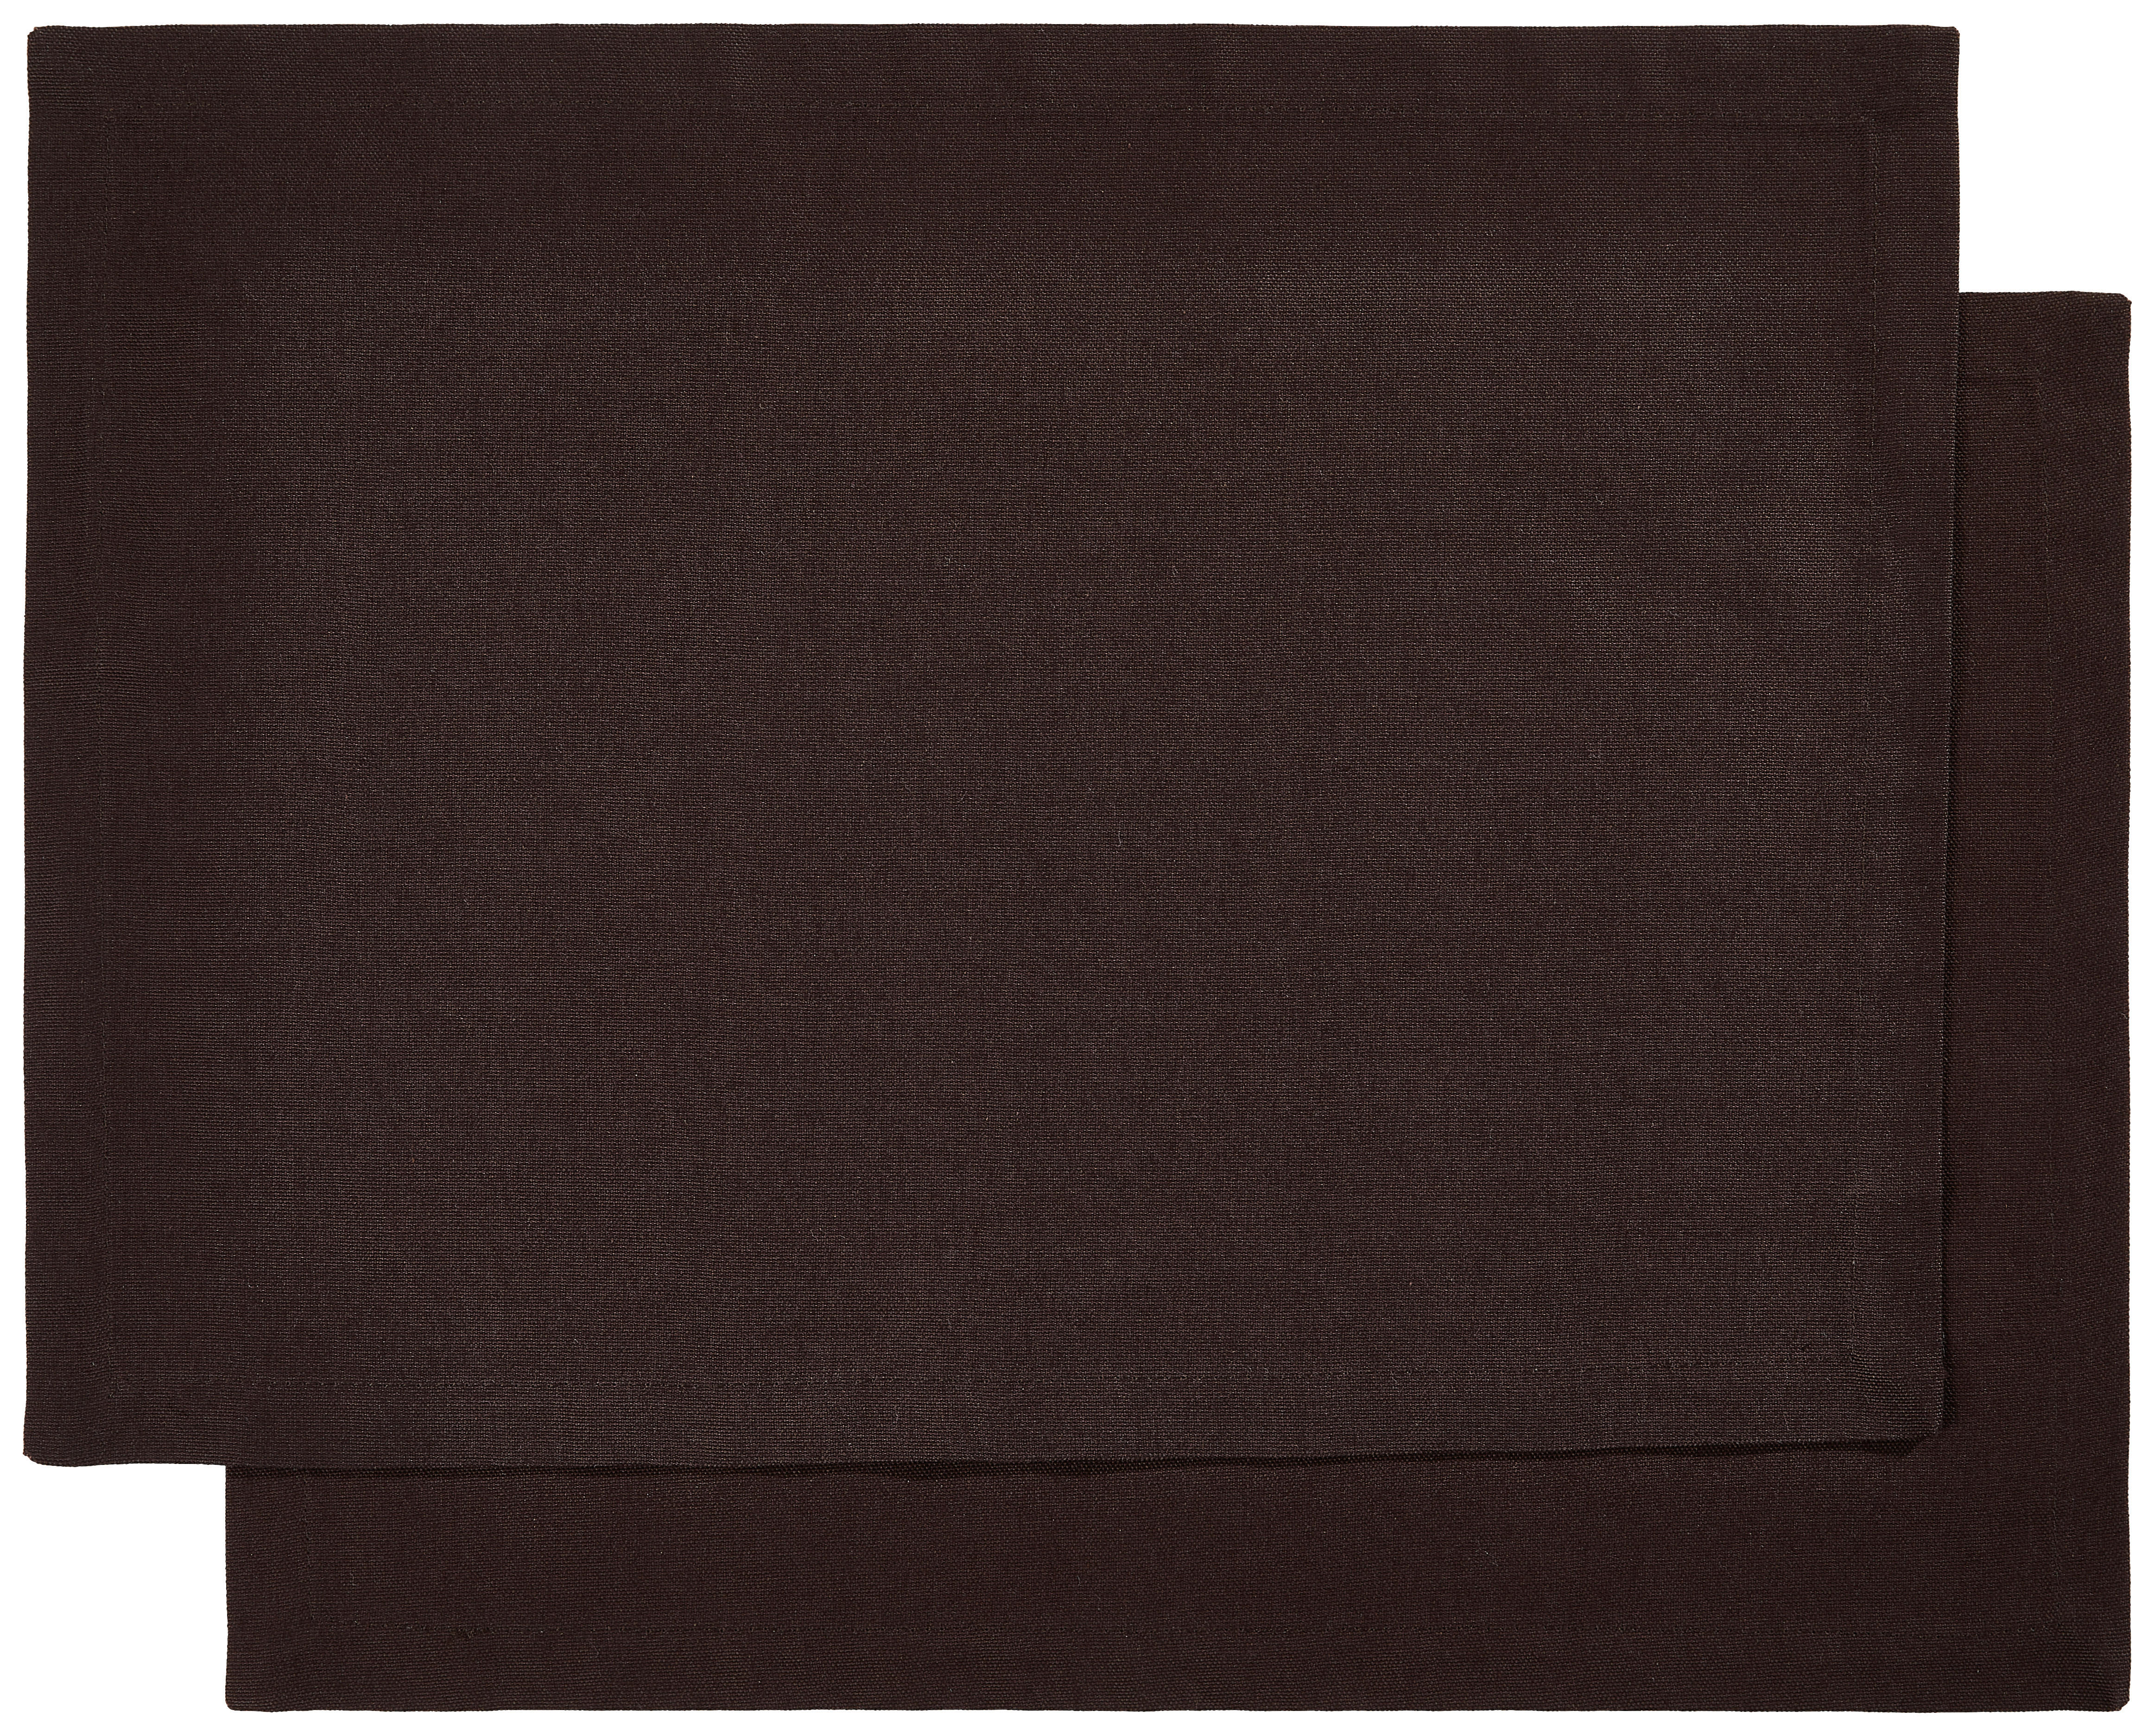 TISCHSET Textil Dunkelbraun 33/45 cm  - Dunkelbraun, Basics, Textil (33/45cm) - Bio:Vio